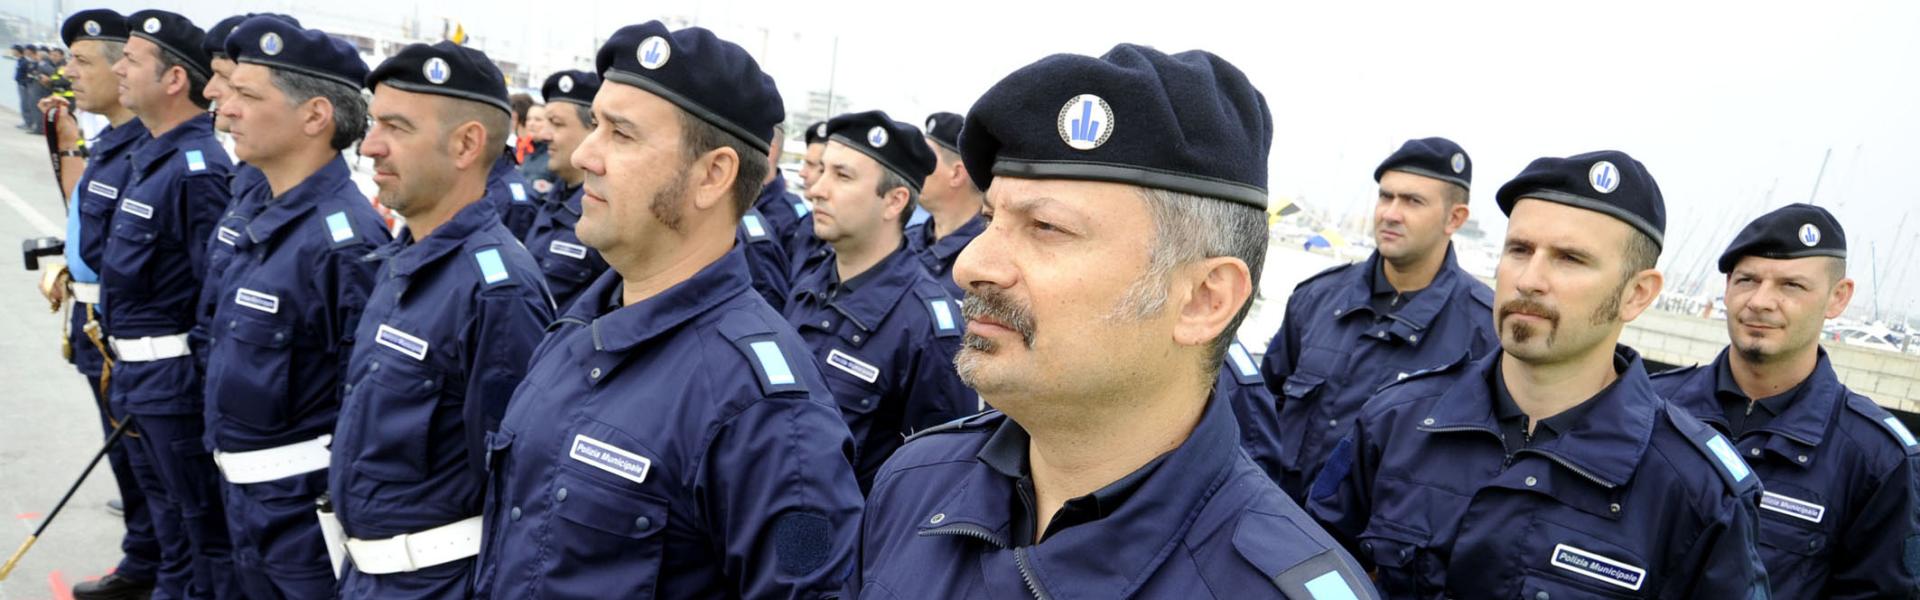 Agenti della Polizia Municipale di Rimini schierati per la manifestazione del 2 Giugno.